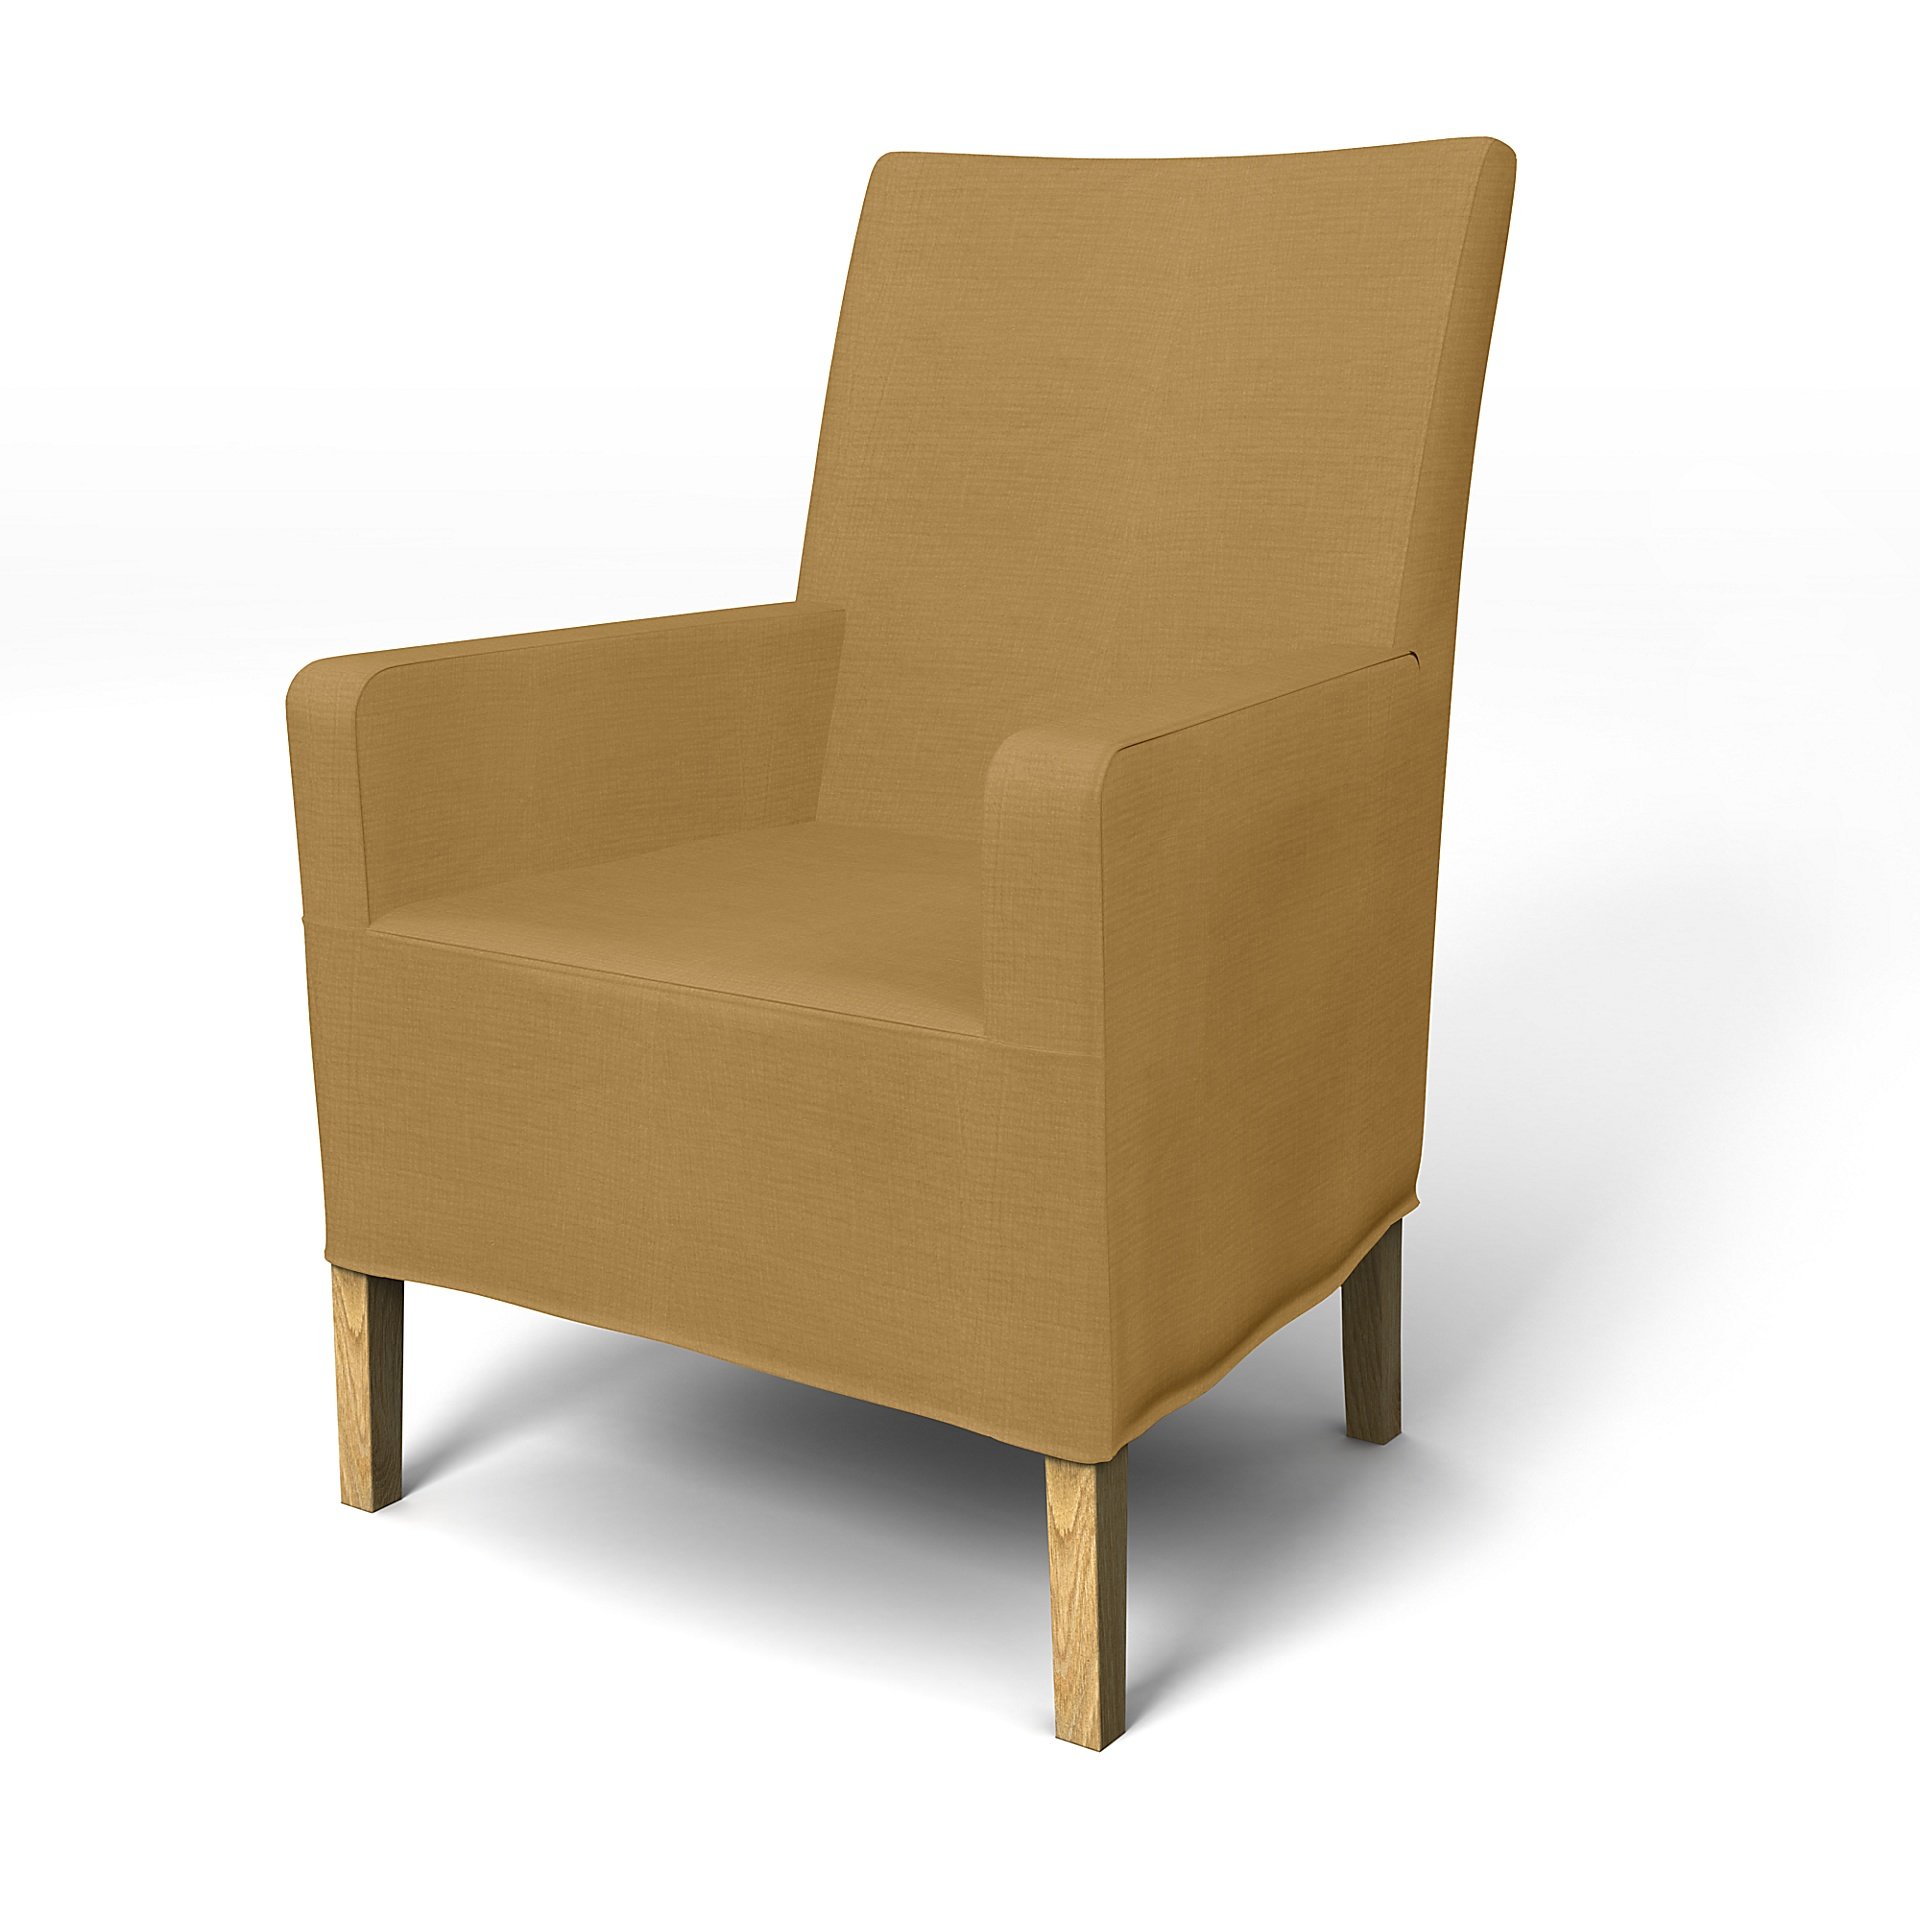 IKEA - Henriksdal, Chair cover w/ armrest, medium length skirt, Dusty Yellow, Linen - Bemz